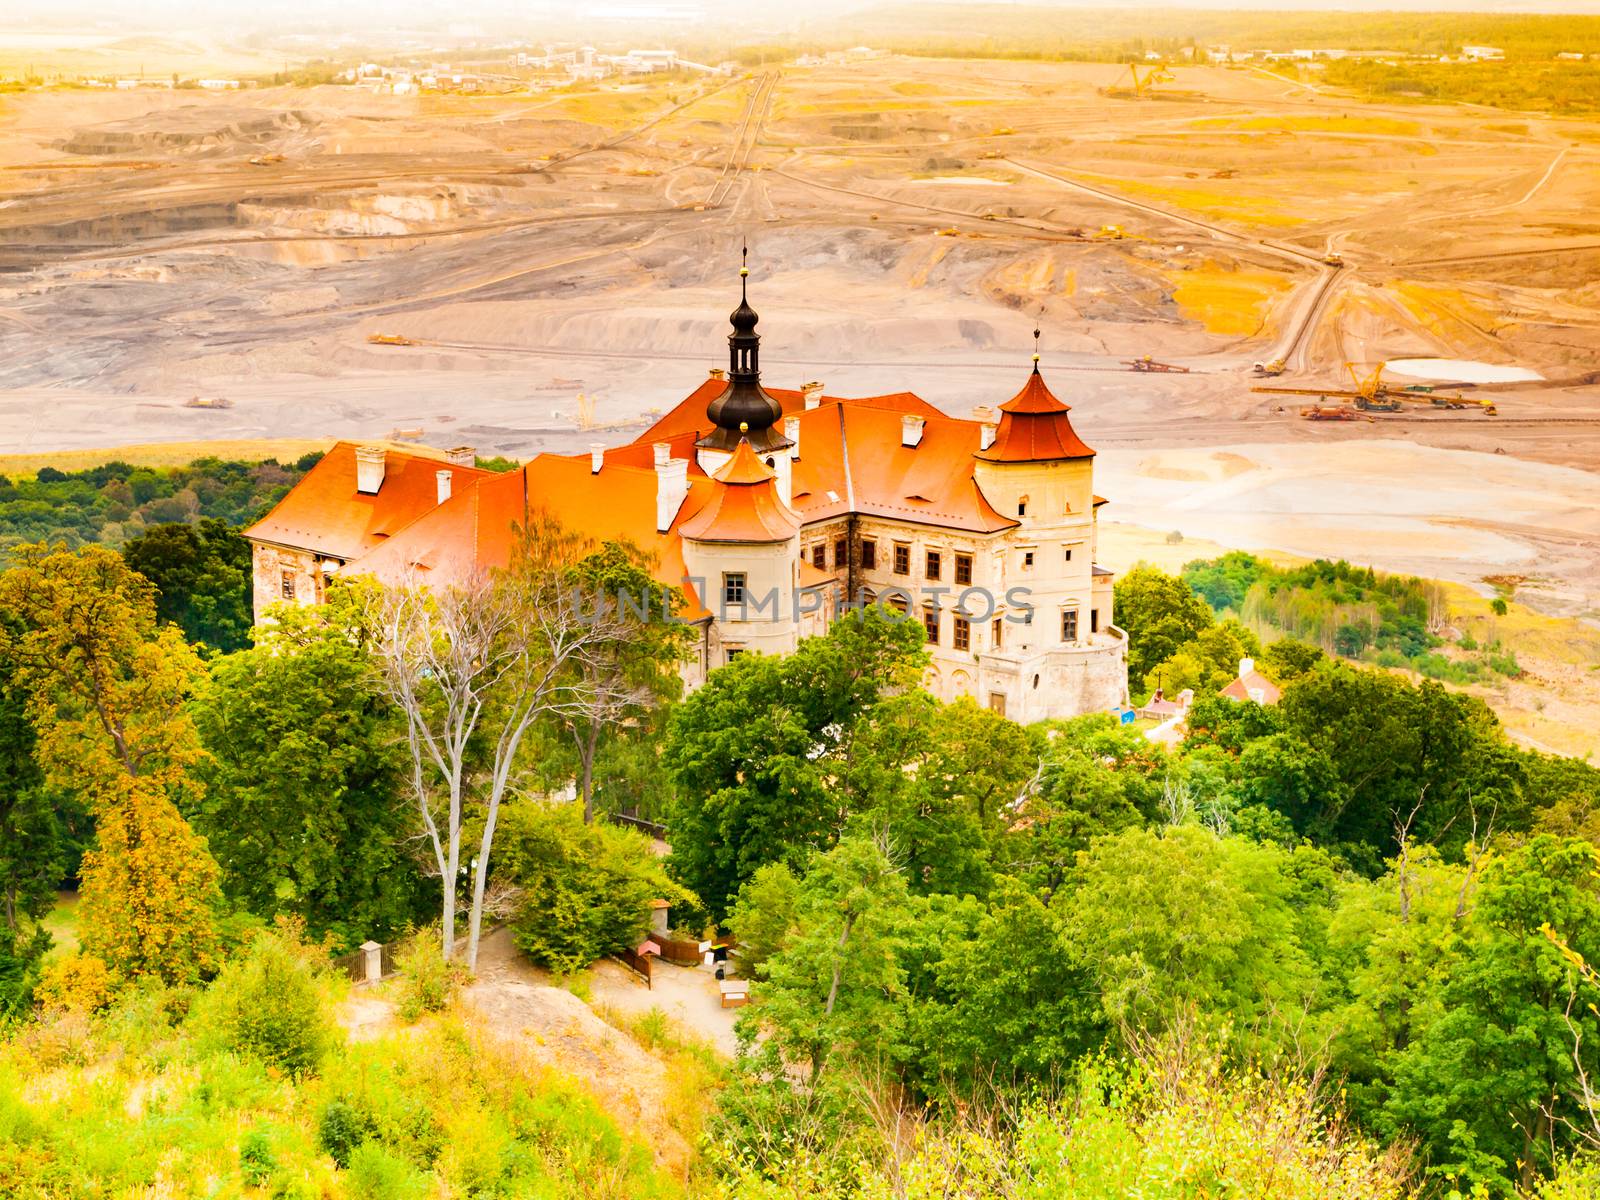 Jezeri Castle situated near coal mine in Northern Bohemia, Czech Republic.